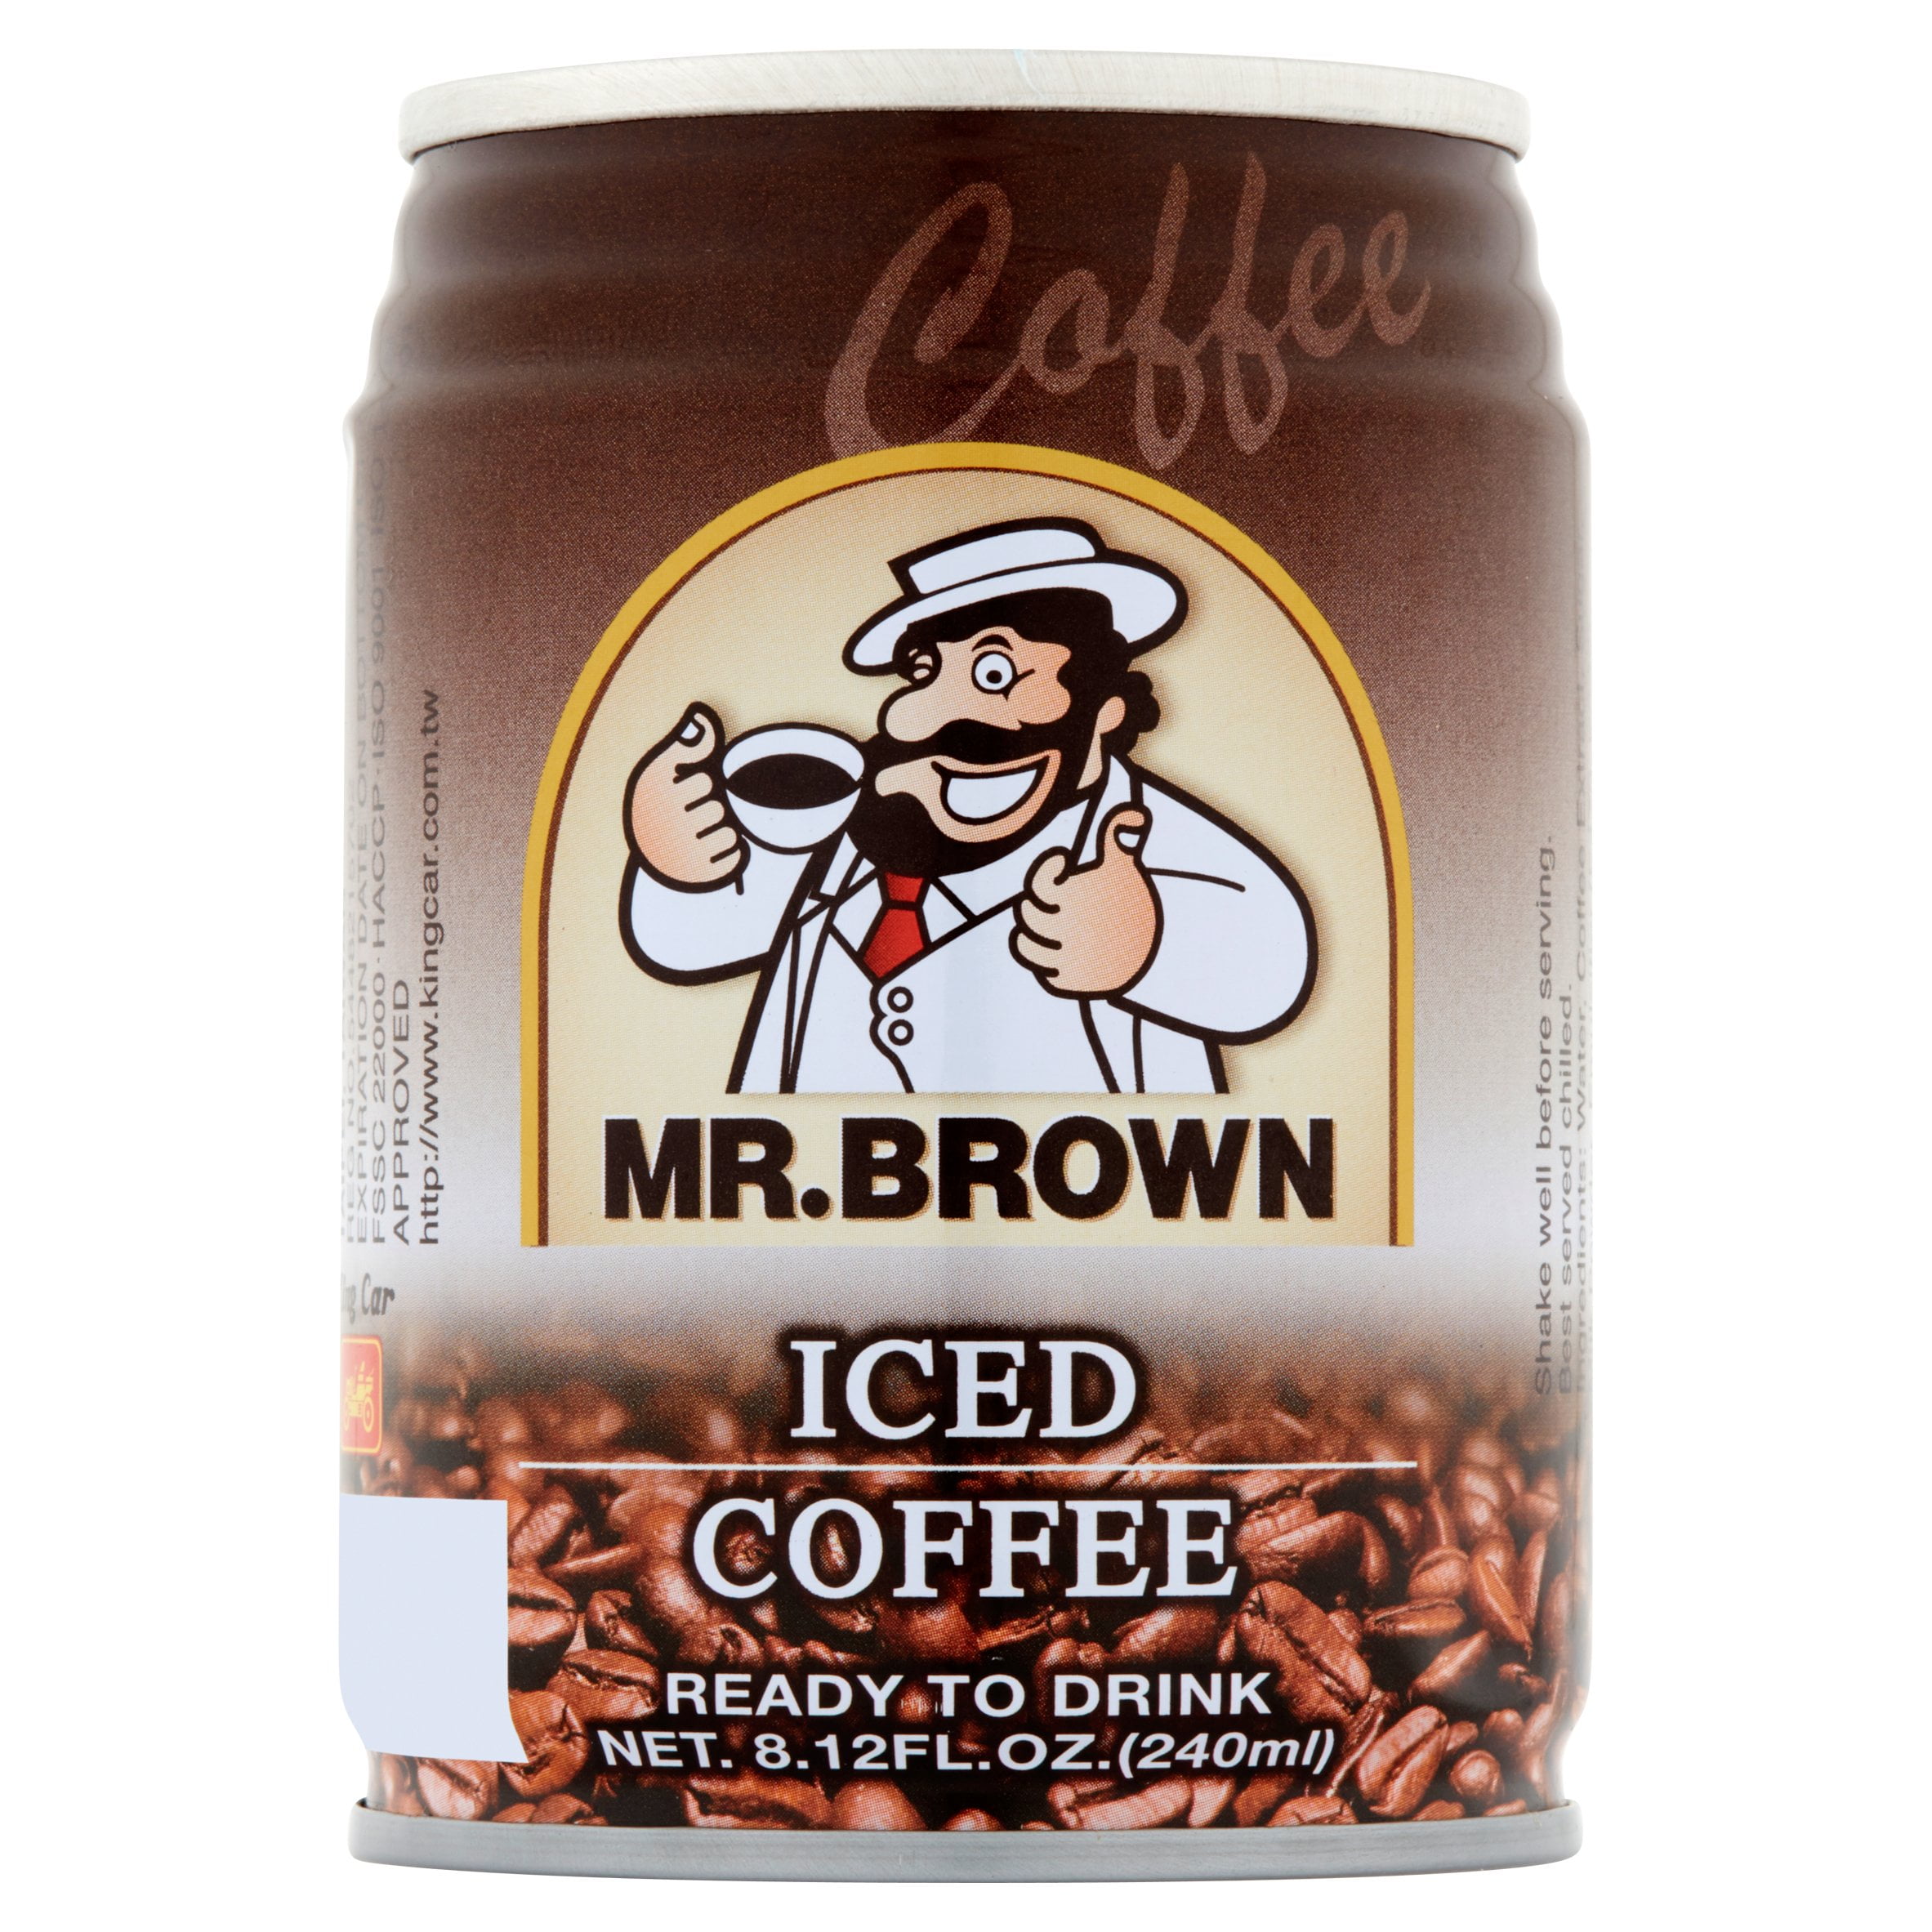 Can i have any coffee. Кофе Мистер Браун в банках. Mr. Brown Iced Coffee. Кофе Mr Brown в банке. Mr Brown кофе холодный.